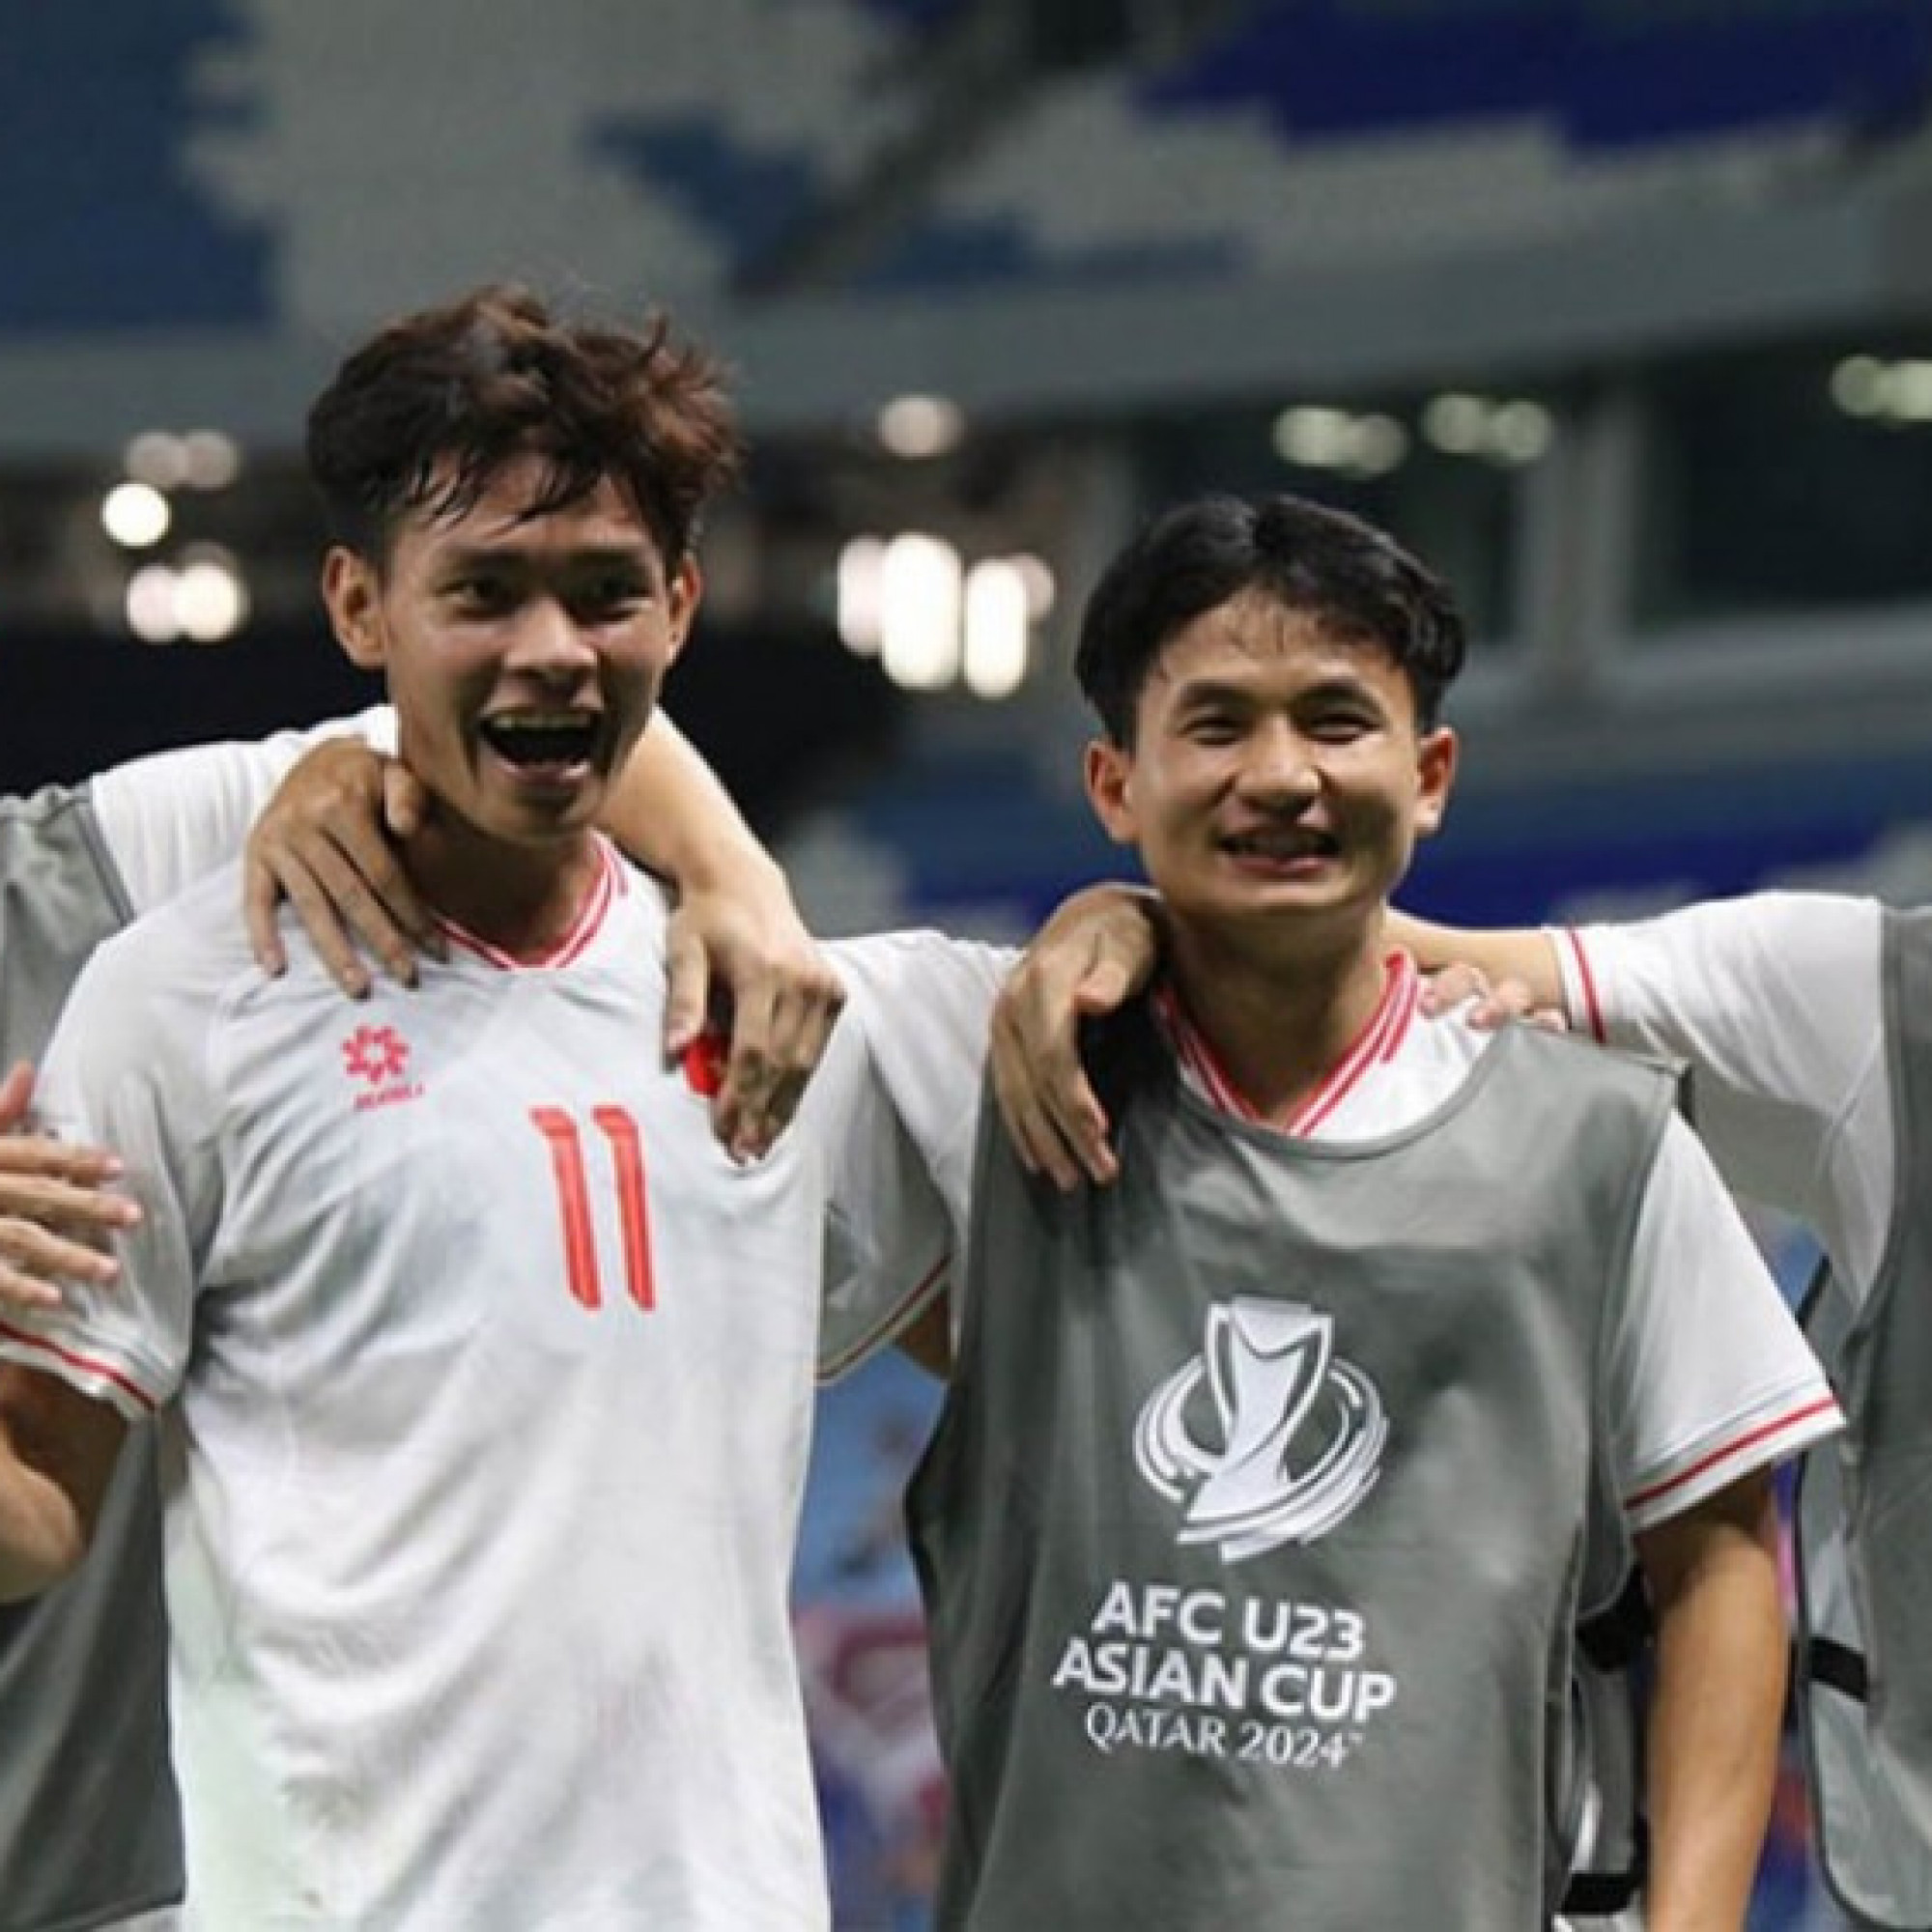  - Bảng xếp hạng U23 châu Á: U23 Việt Nam xuất sắc giật ngôi đầu, U23 Malaysia thê thảm